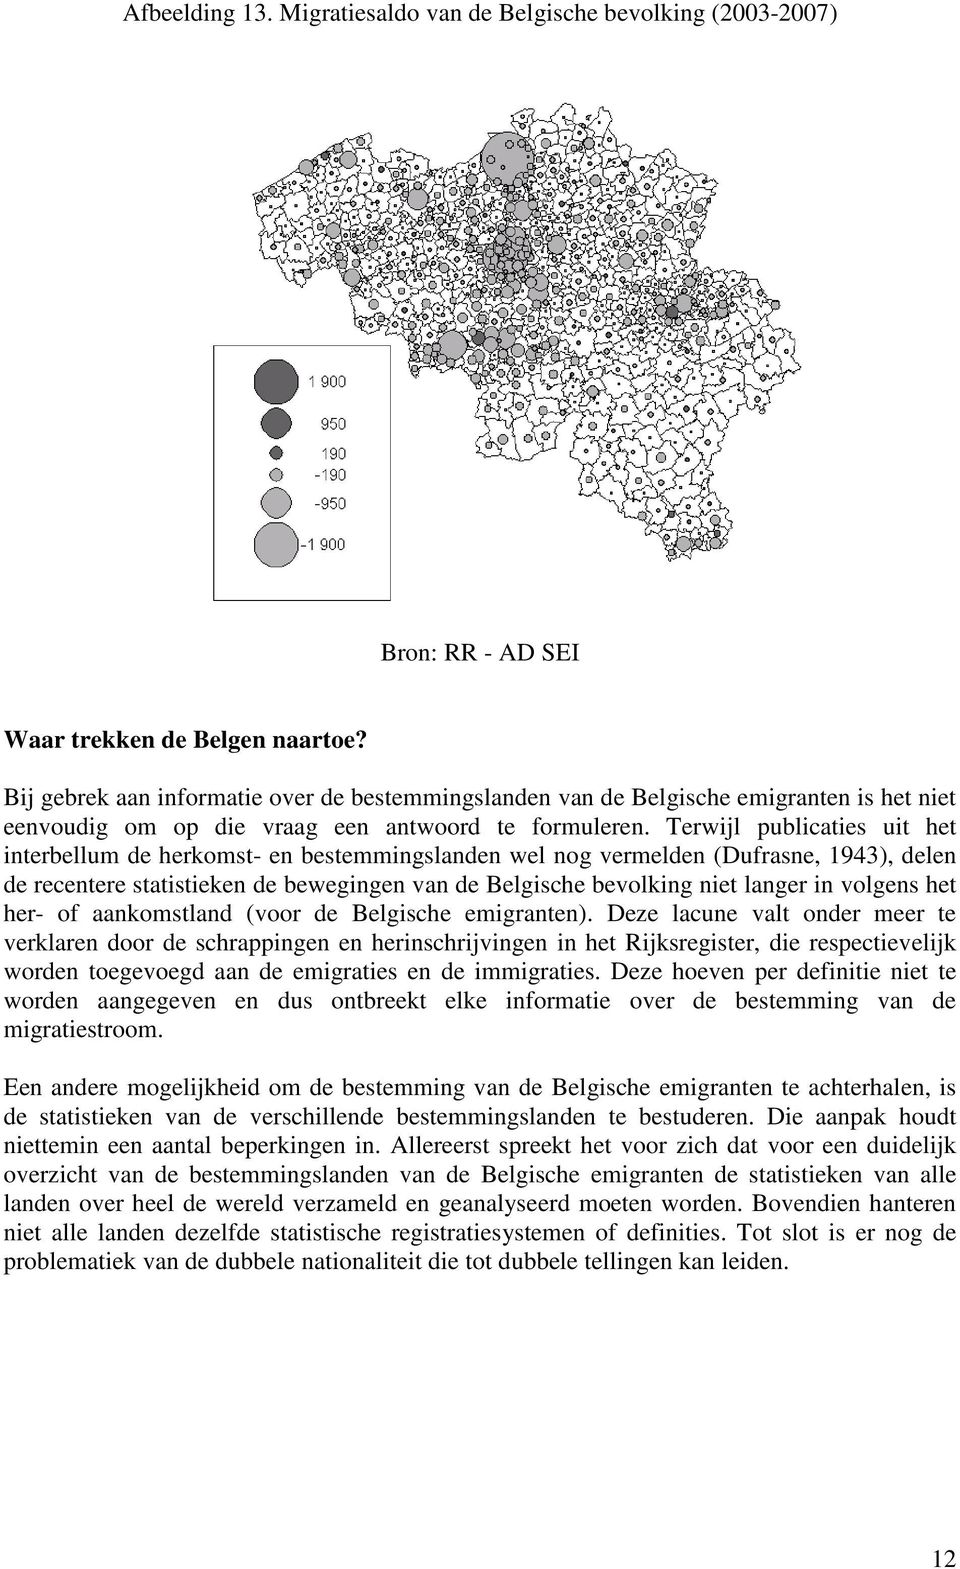 Terwijl publicaties uit het interbellum de herkomst- en bestemmingslanden wel nog vermelden (Dufrasne, 1943), delen de recentere statistieken de bewegingen van de Belgische bevolking niet langer in